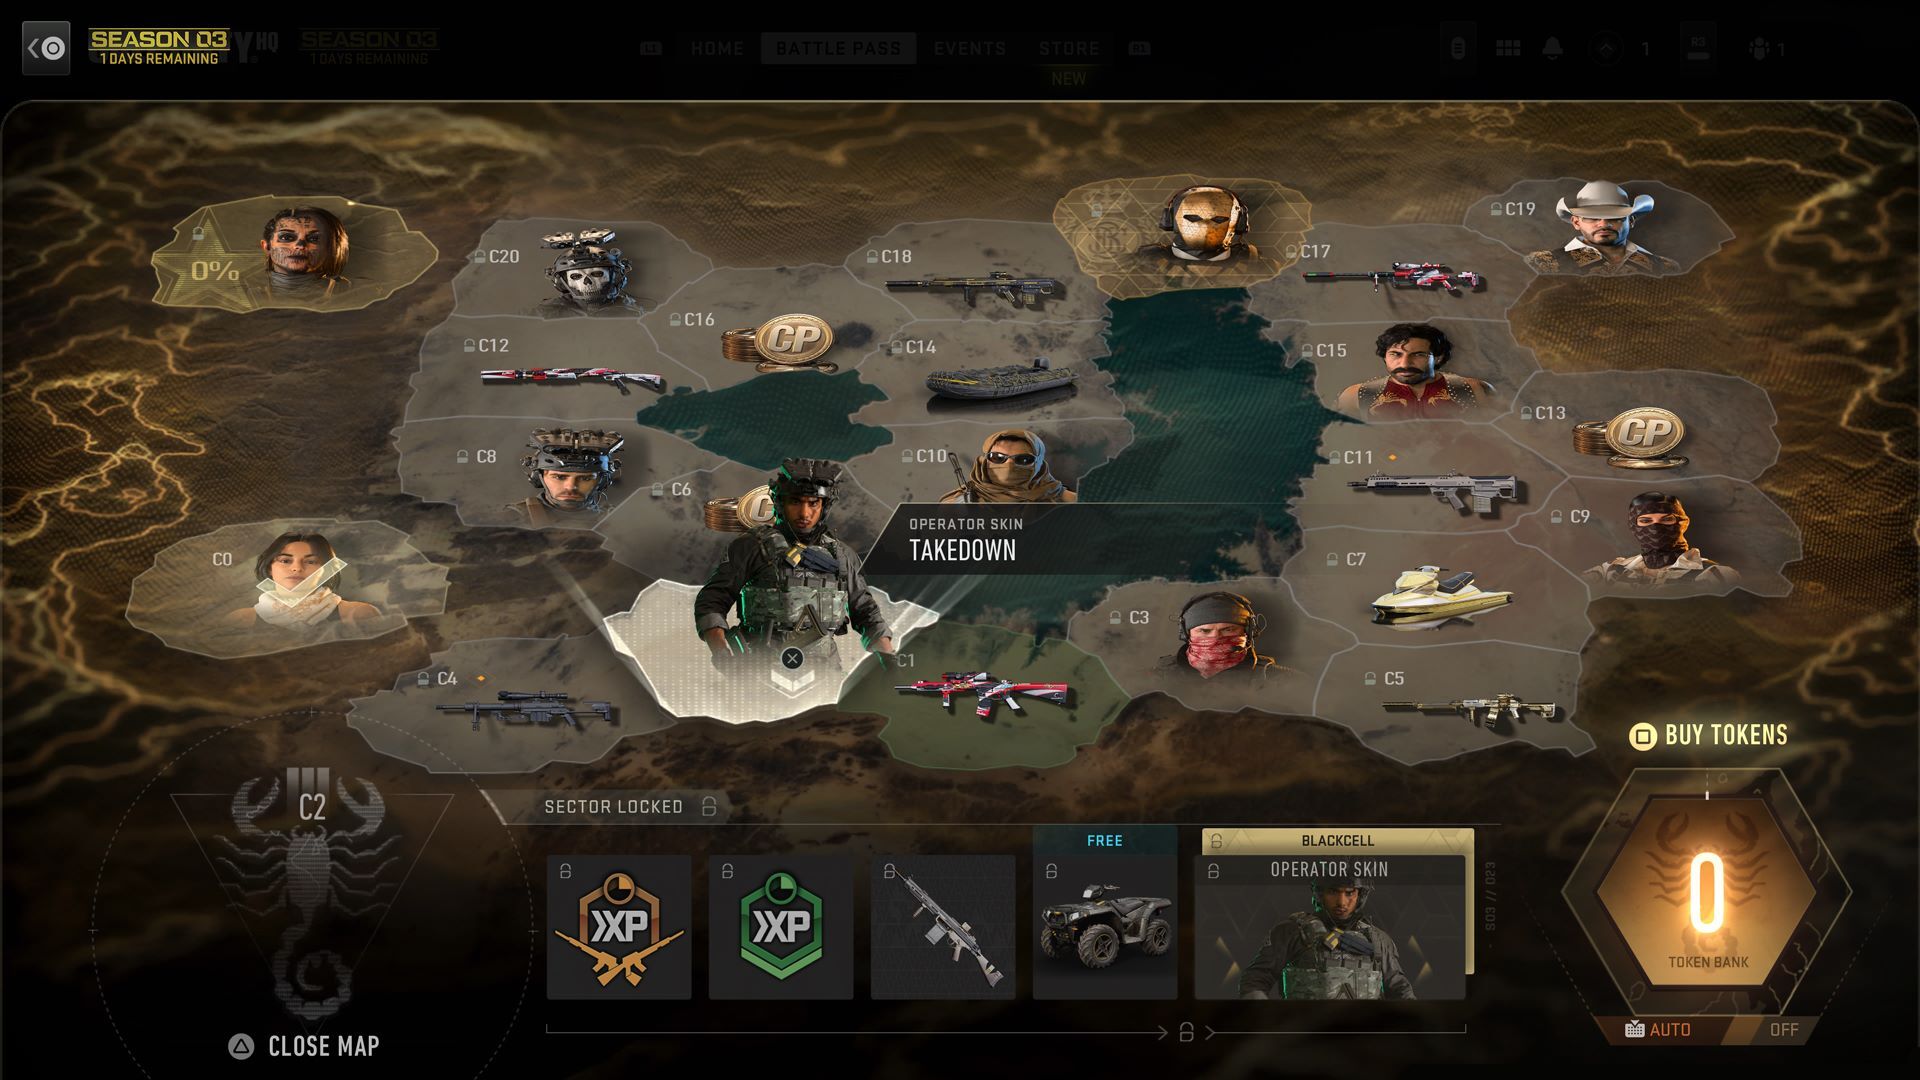 Warzone 2.0: Modern Warfare II Is Steam's Third-Biggest Game